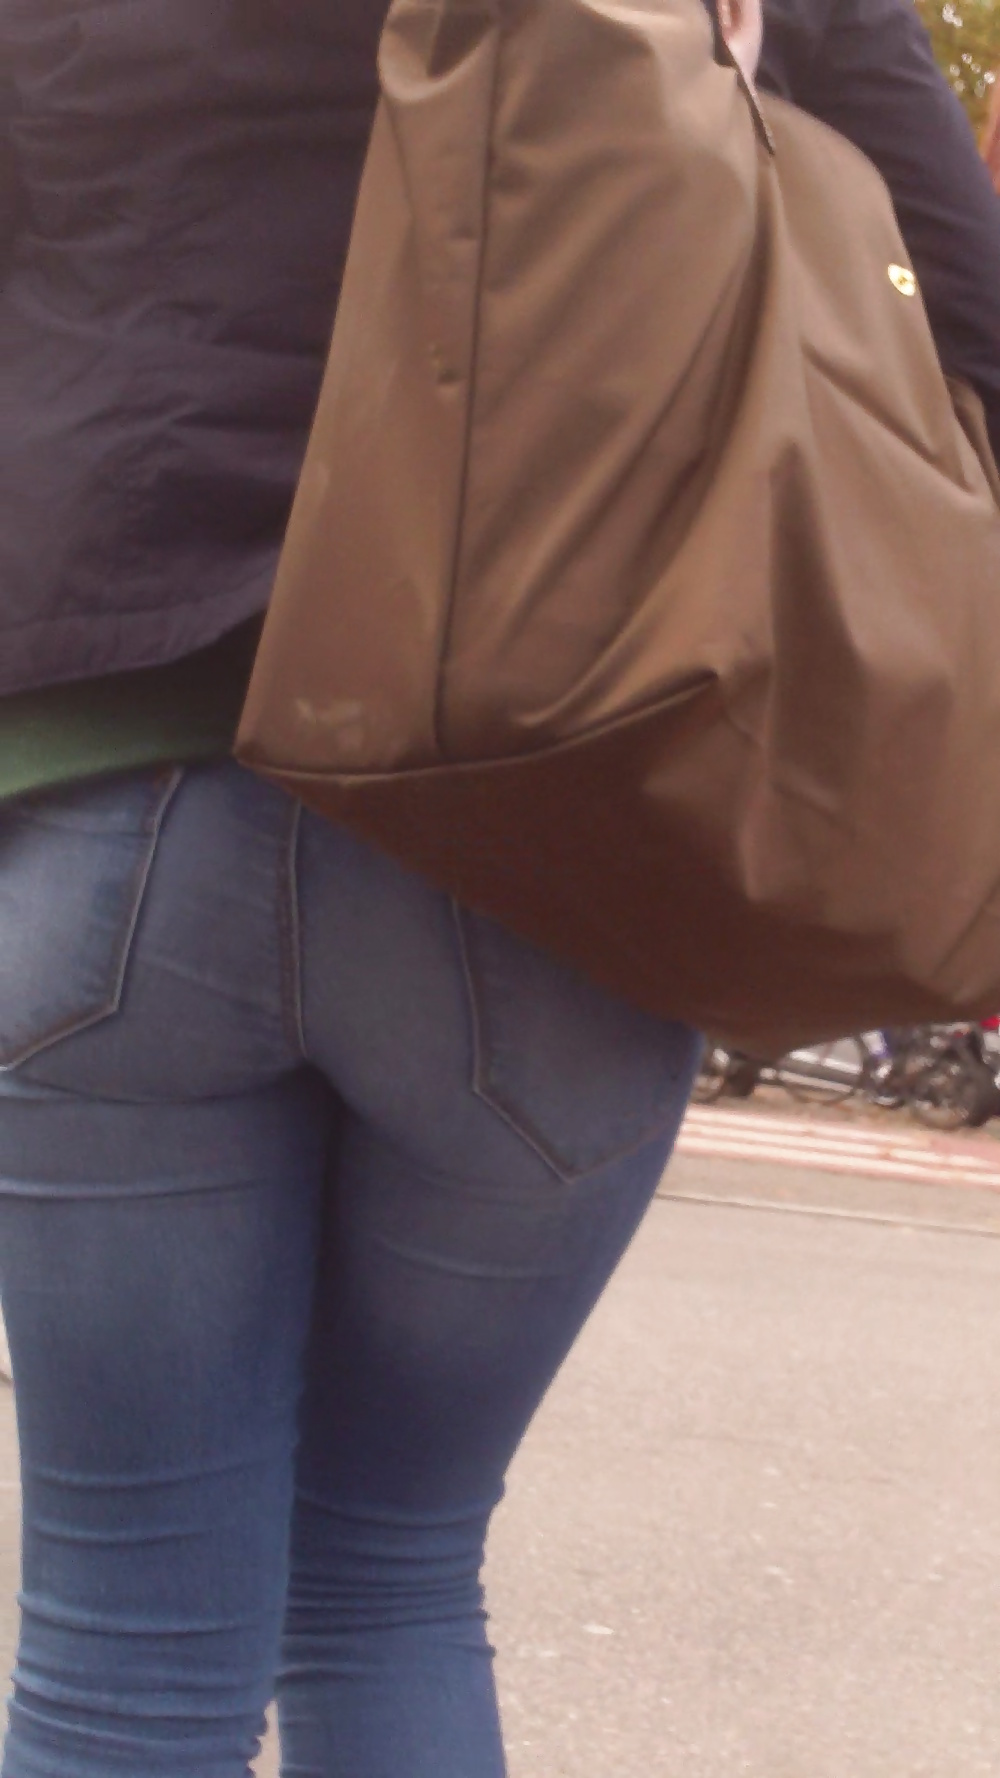 Popular teen girls ass & butt in jeans Part 6 #32010382